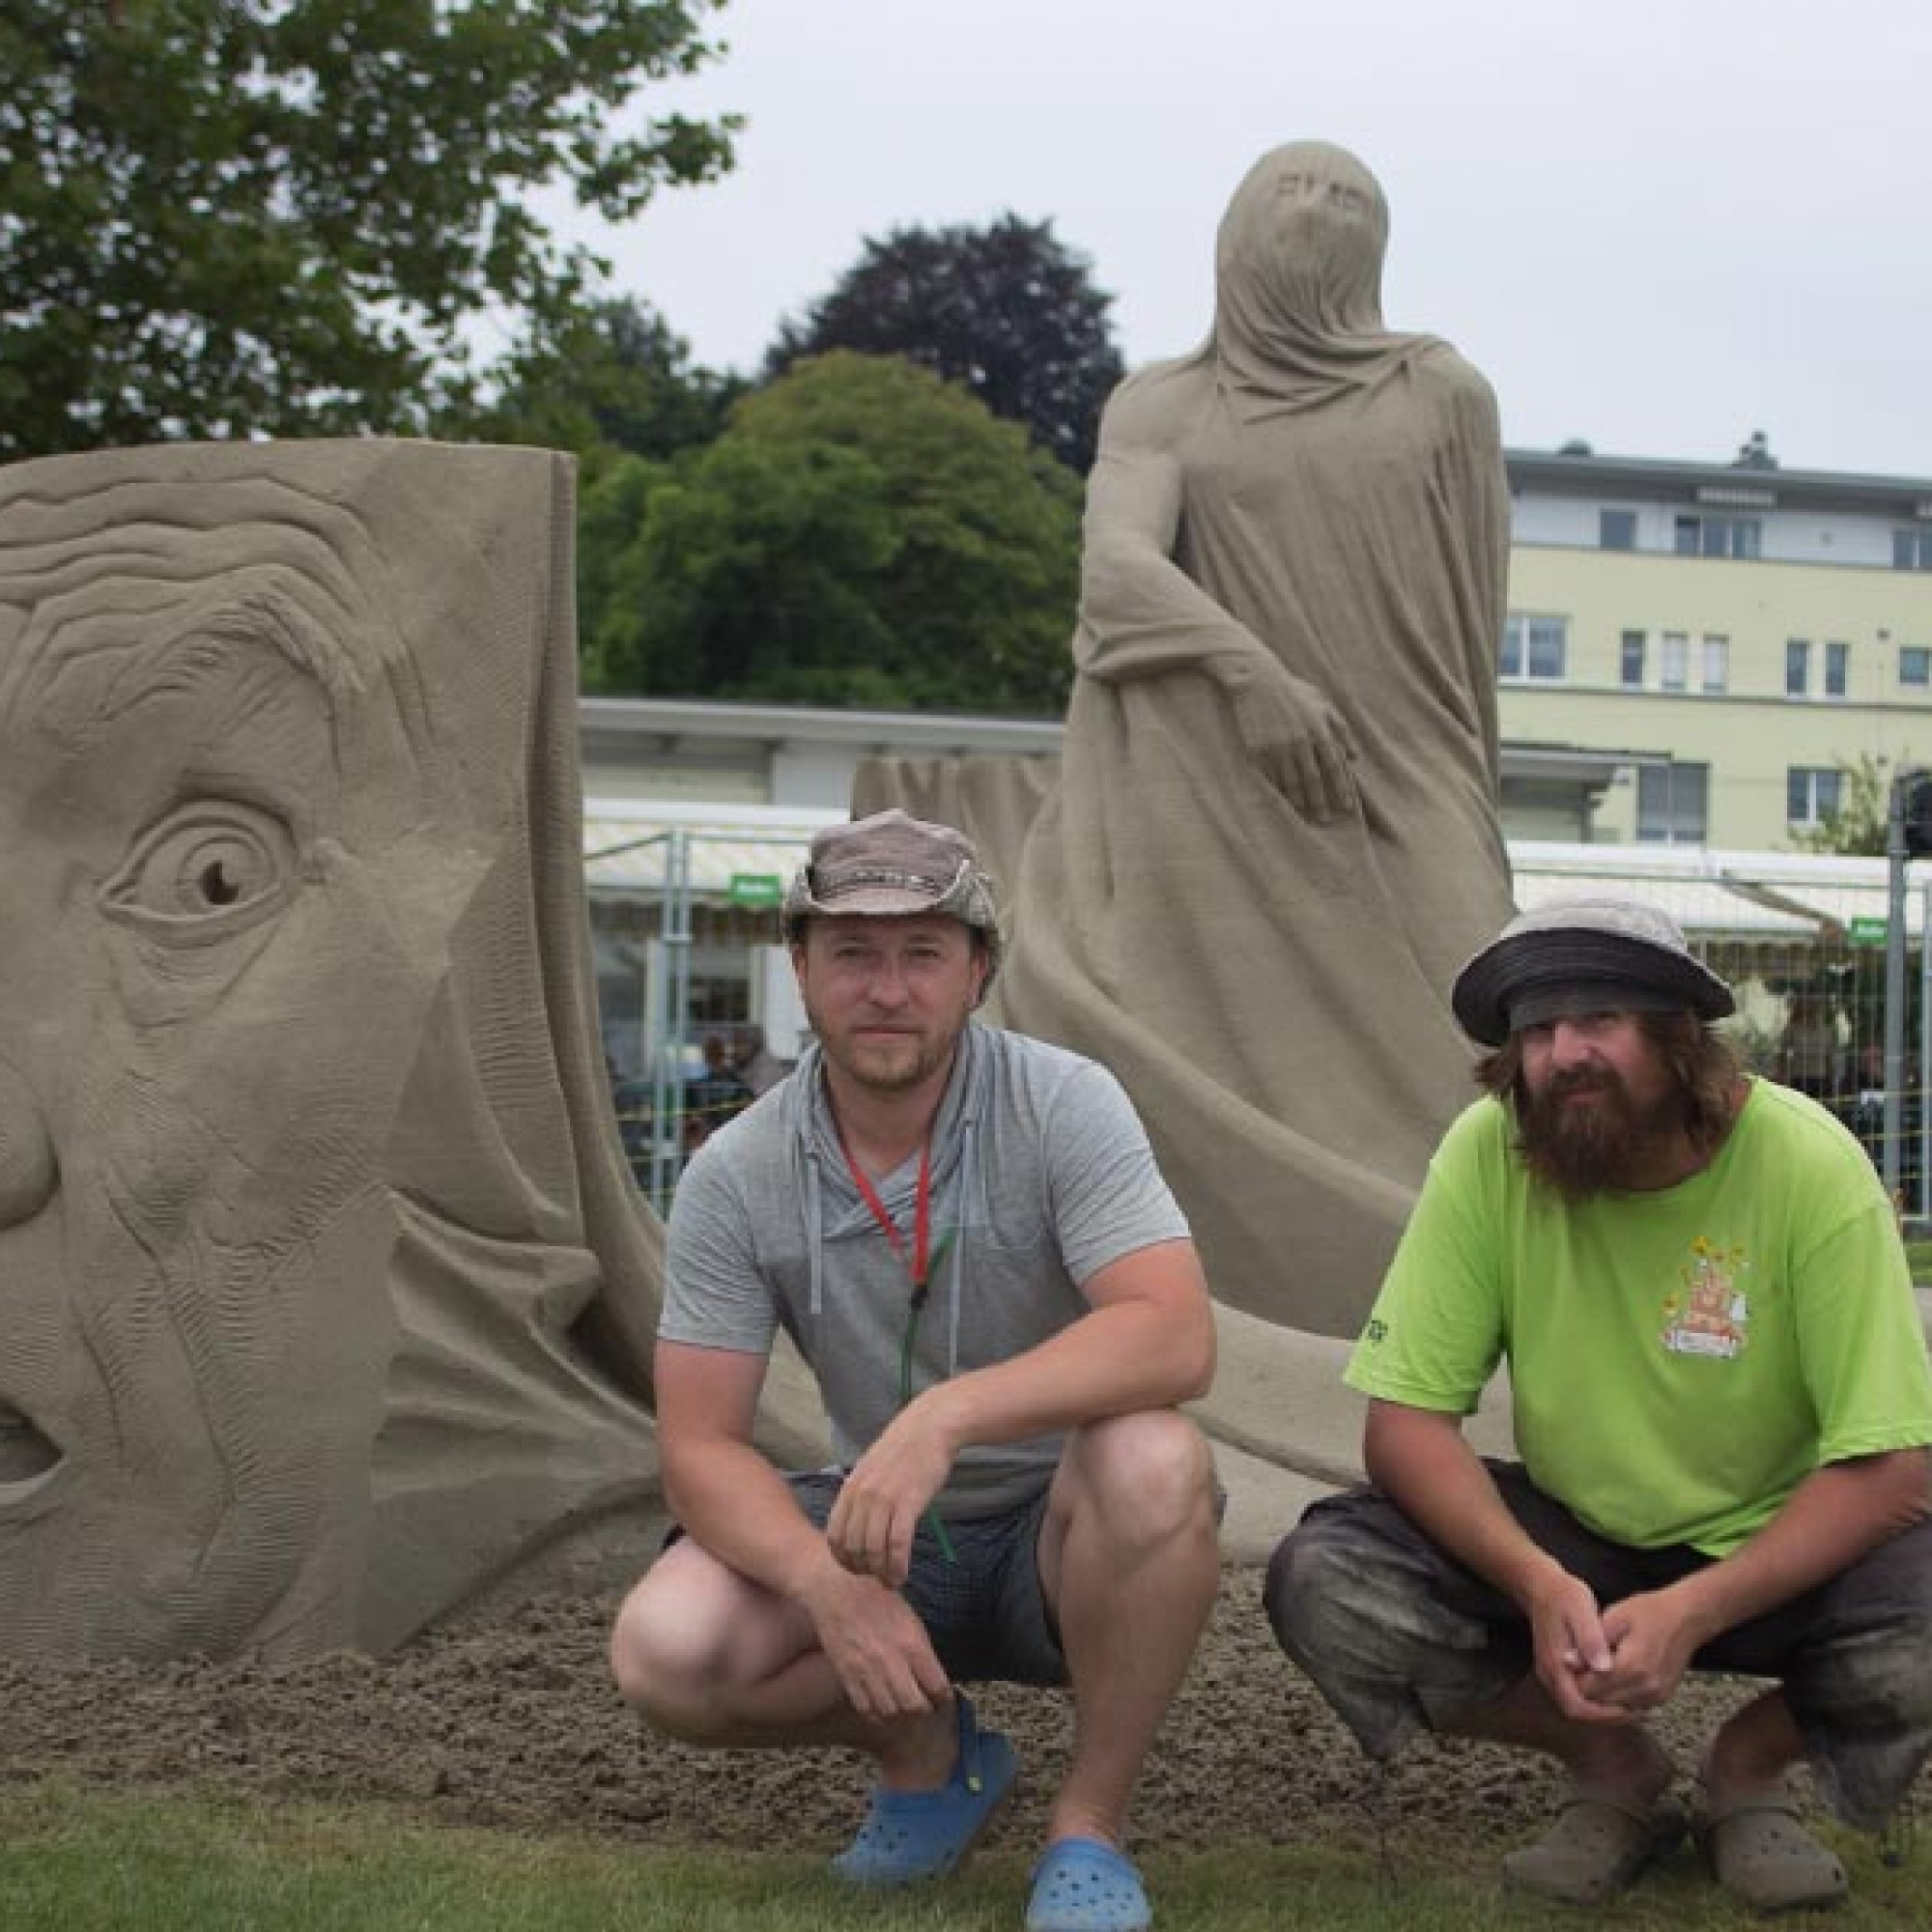 Die Gewinner des Sandskulpturen-Festivals 2016: Ivan Zverev (links) und Dmitryi Klimenko. (Bilder: René Koller - Sandskulpturen Festival Verein Pablo)